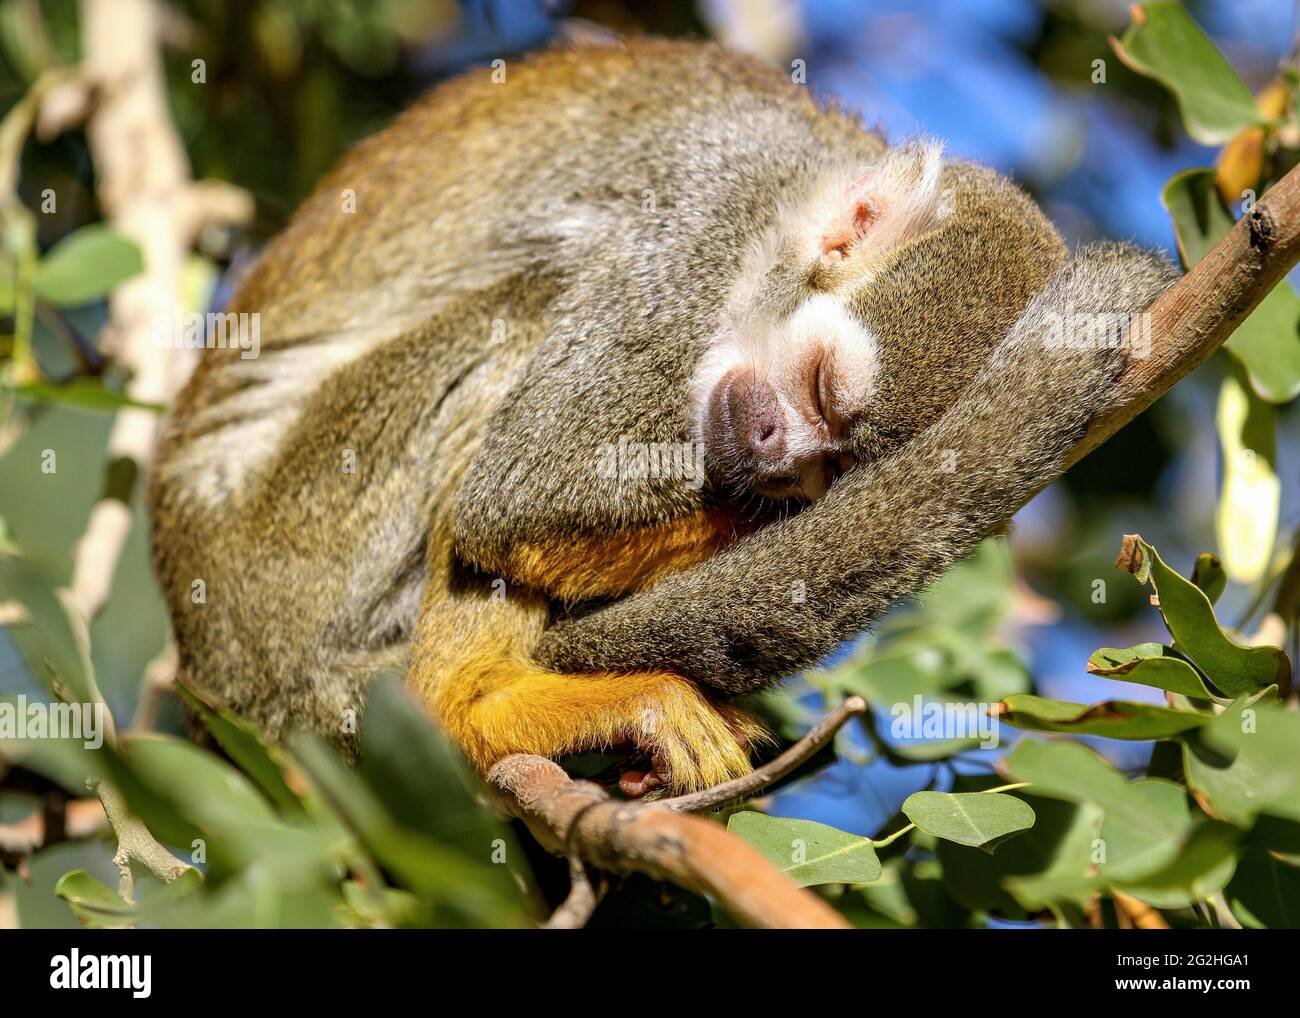 La scimmia scoiattolo dorme pacificamente su un ramo di albero al sole con la coda arricciata intorno al corpo Foto Stock